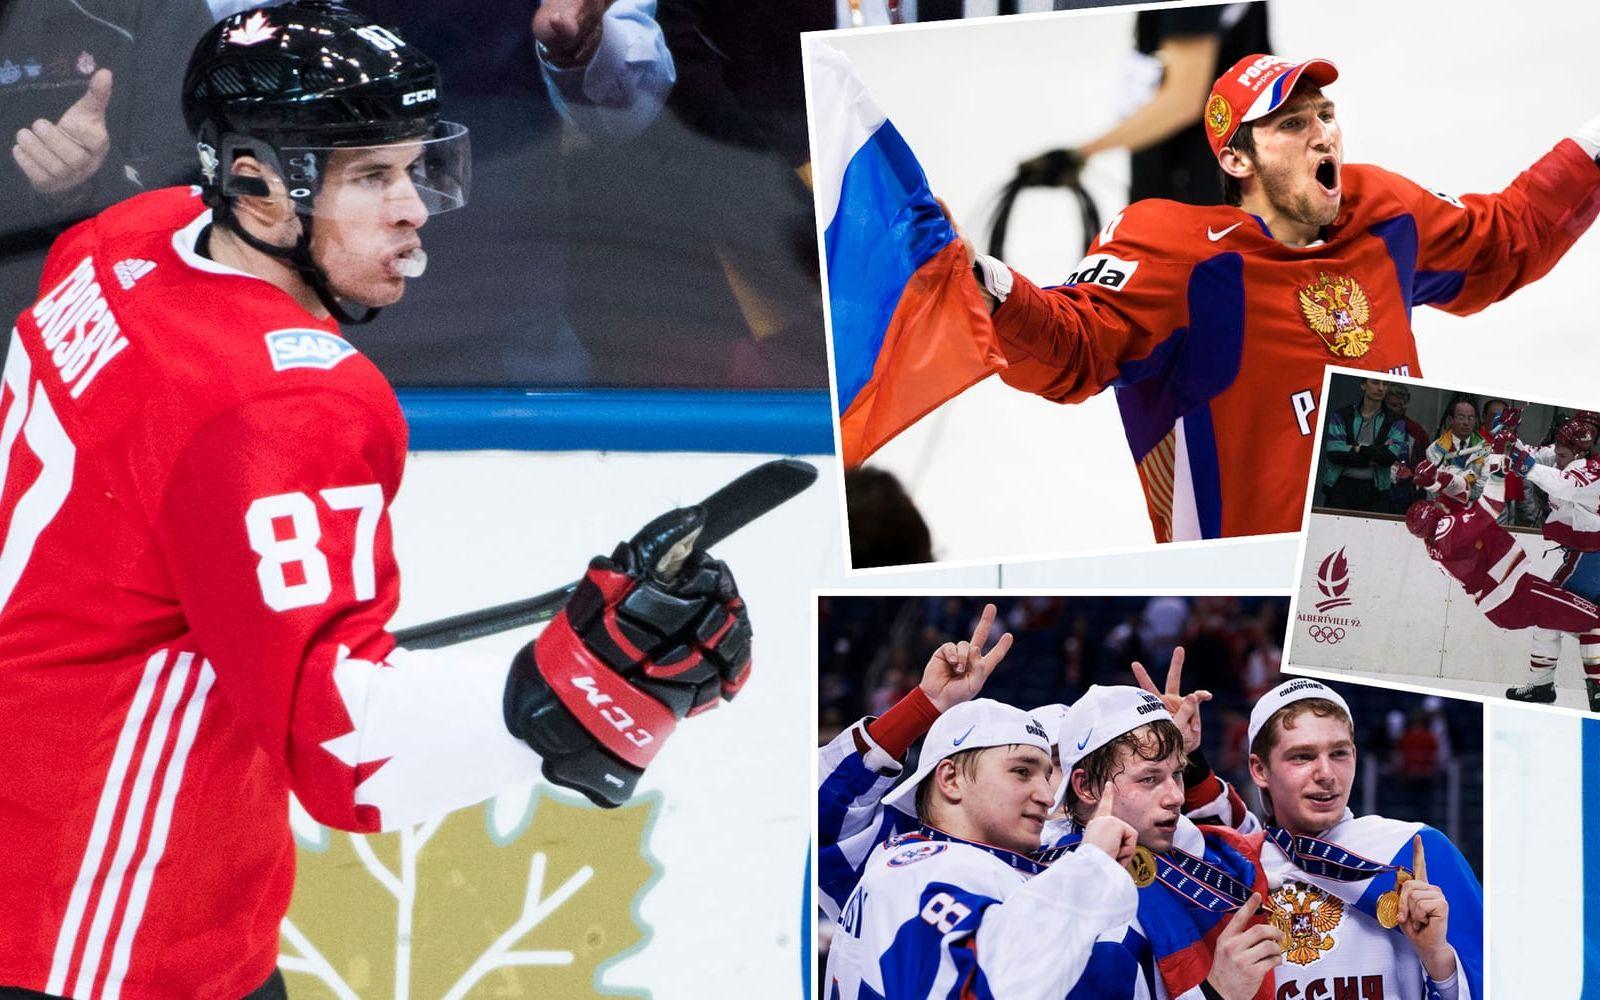 <strong>4. Kanada–Ryssland.</strong> Världens två största hockeynationer. Väst mot öst, Crosby mot Ovetjkin... och rivaliteten var förmodligen ännu större under "CCCP-eran". Foto: Bildbyrån